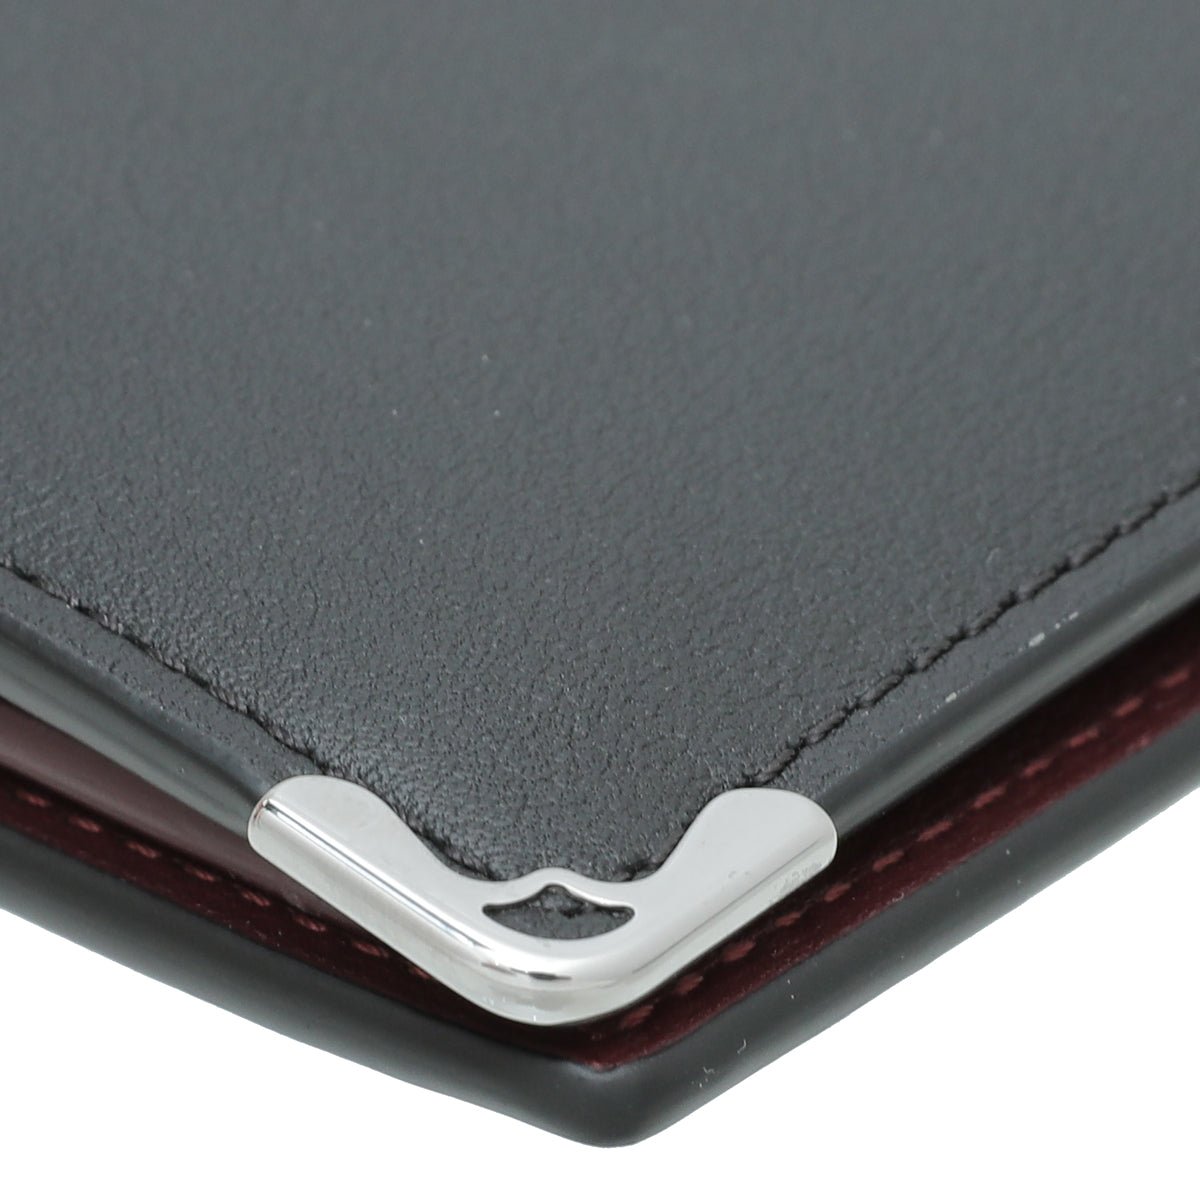 CRL3001365 - Multiple Wallet, Must de Cartier - Black calfskin, stainless  steel finish - Cartier